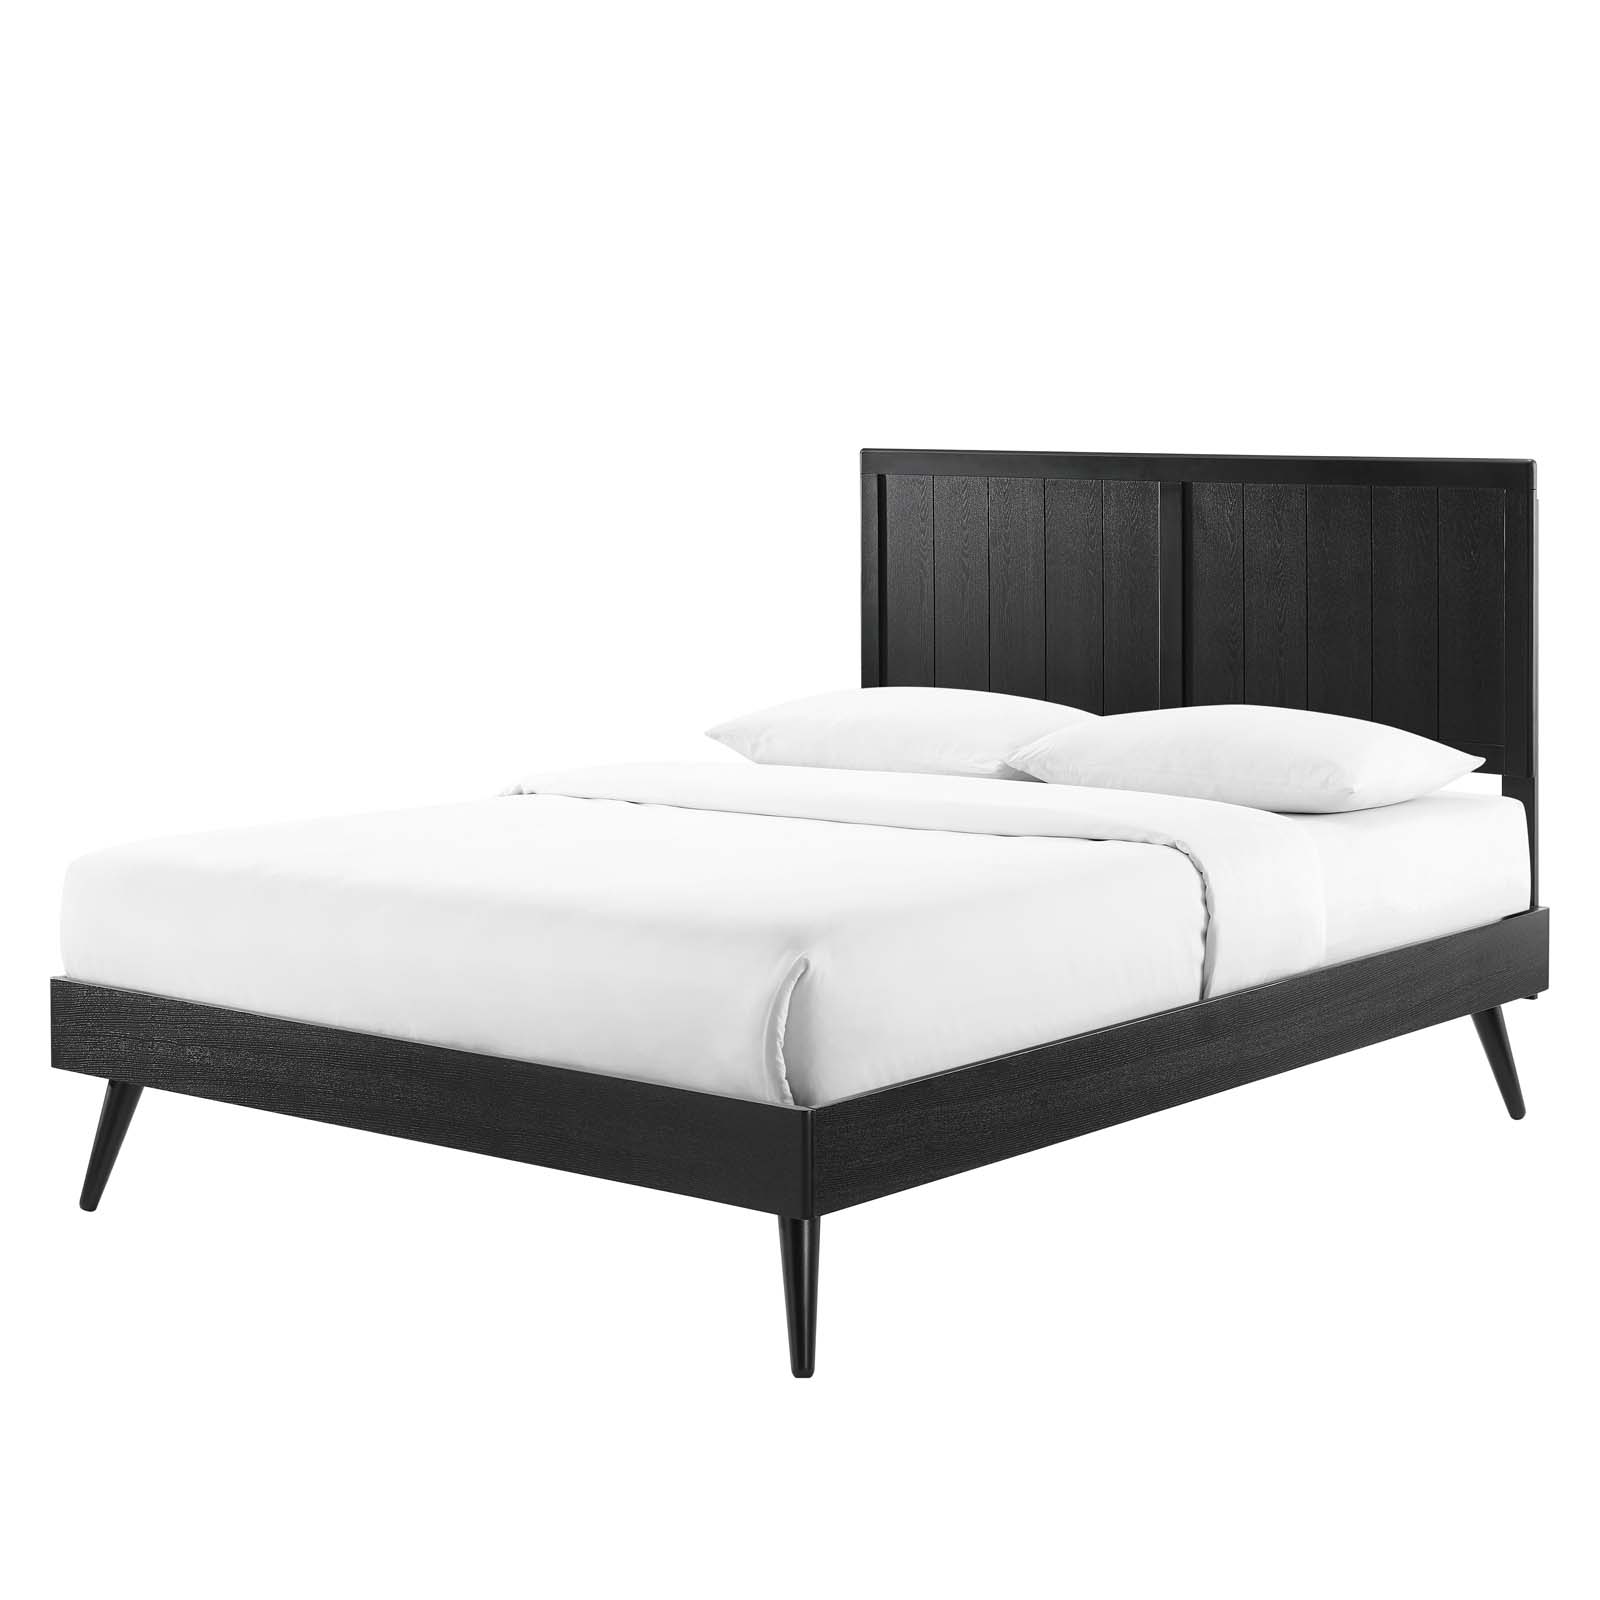 Platform Bed Frame, Full Size, Wood, Black, Modern Contemporary Urban Design, Bedroom Master Guest Suite - image 1 of 10